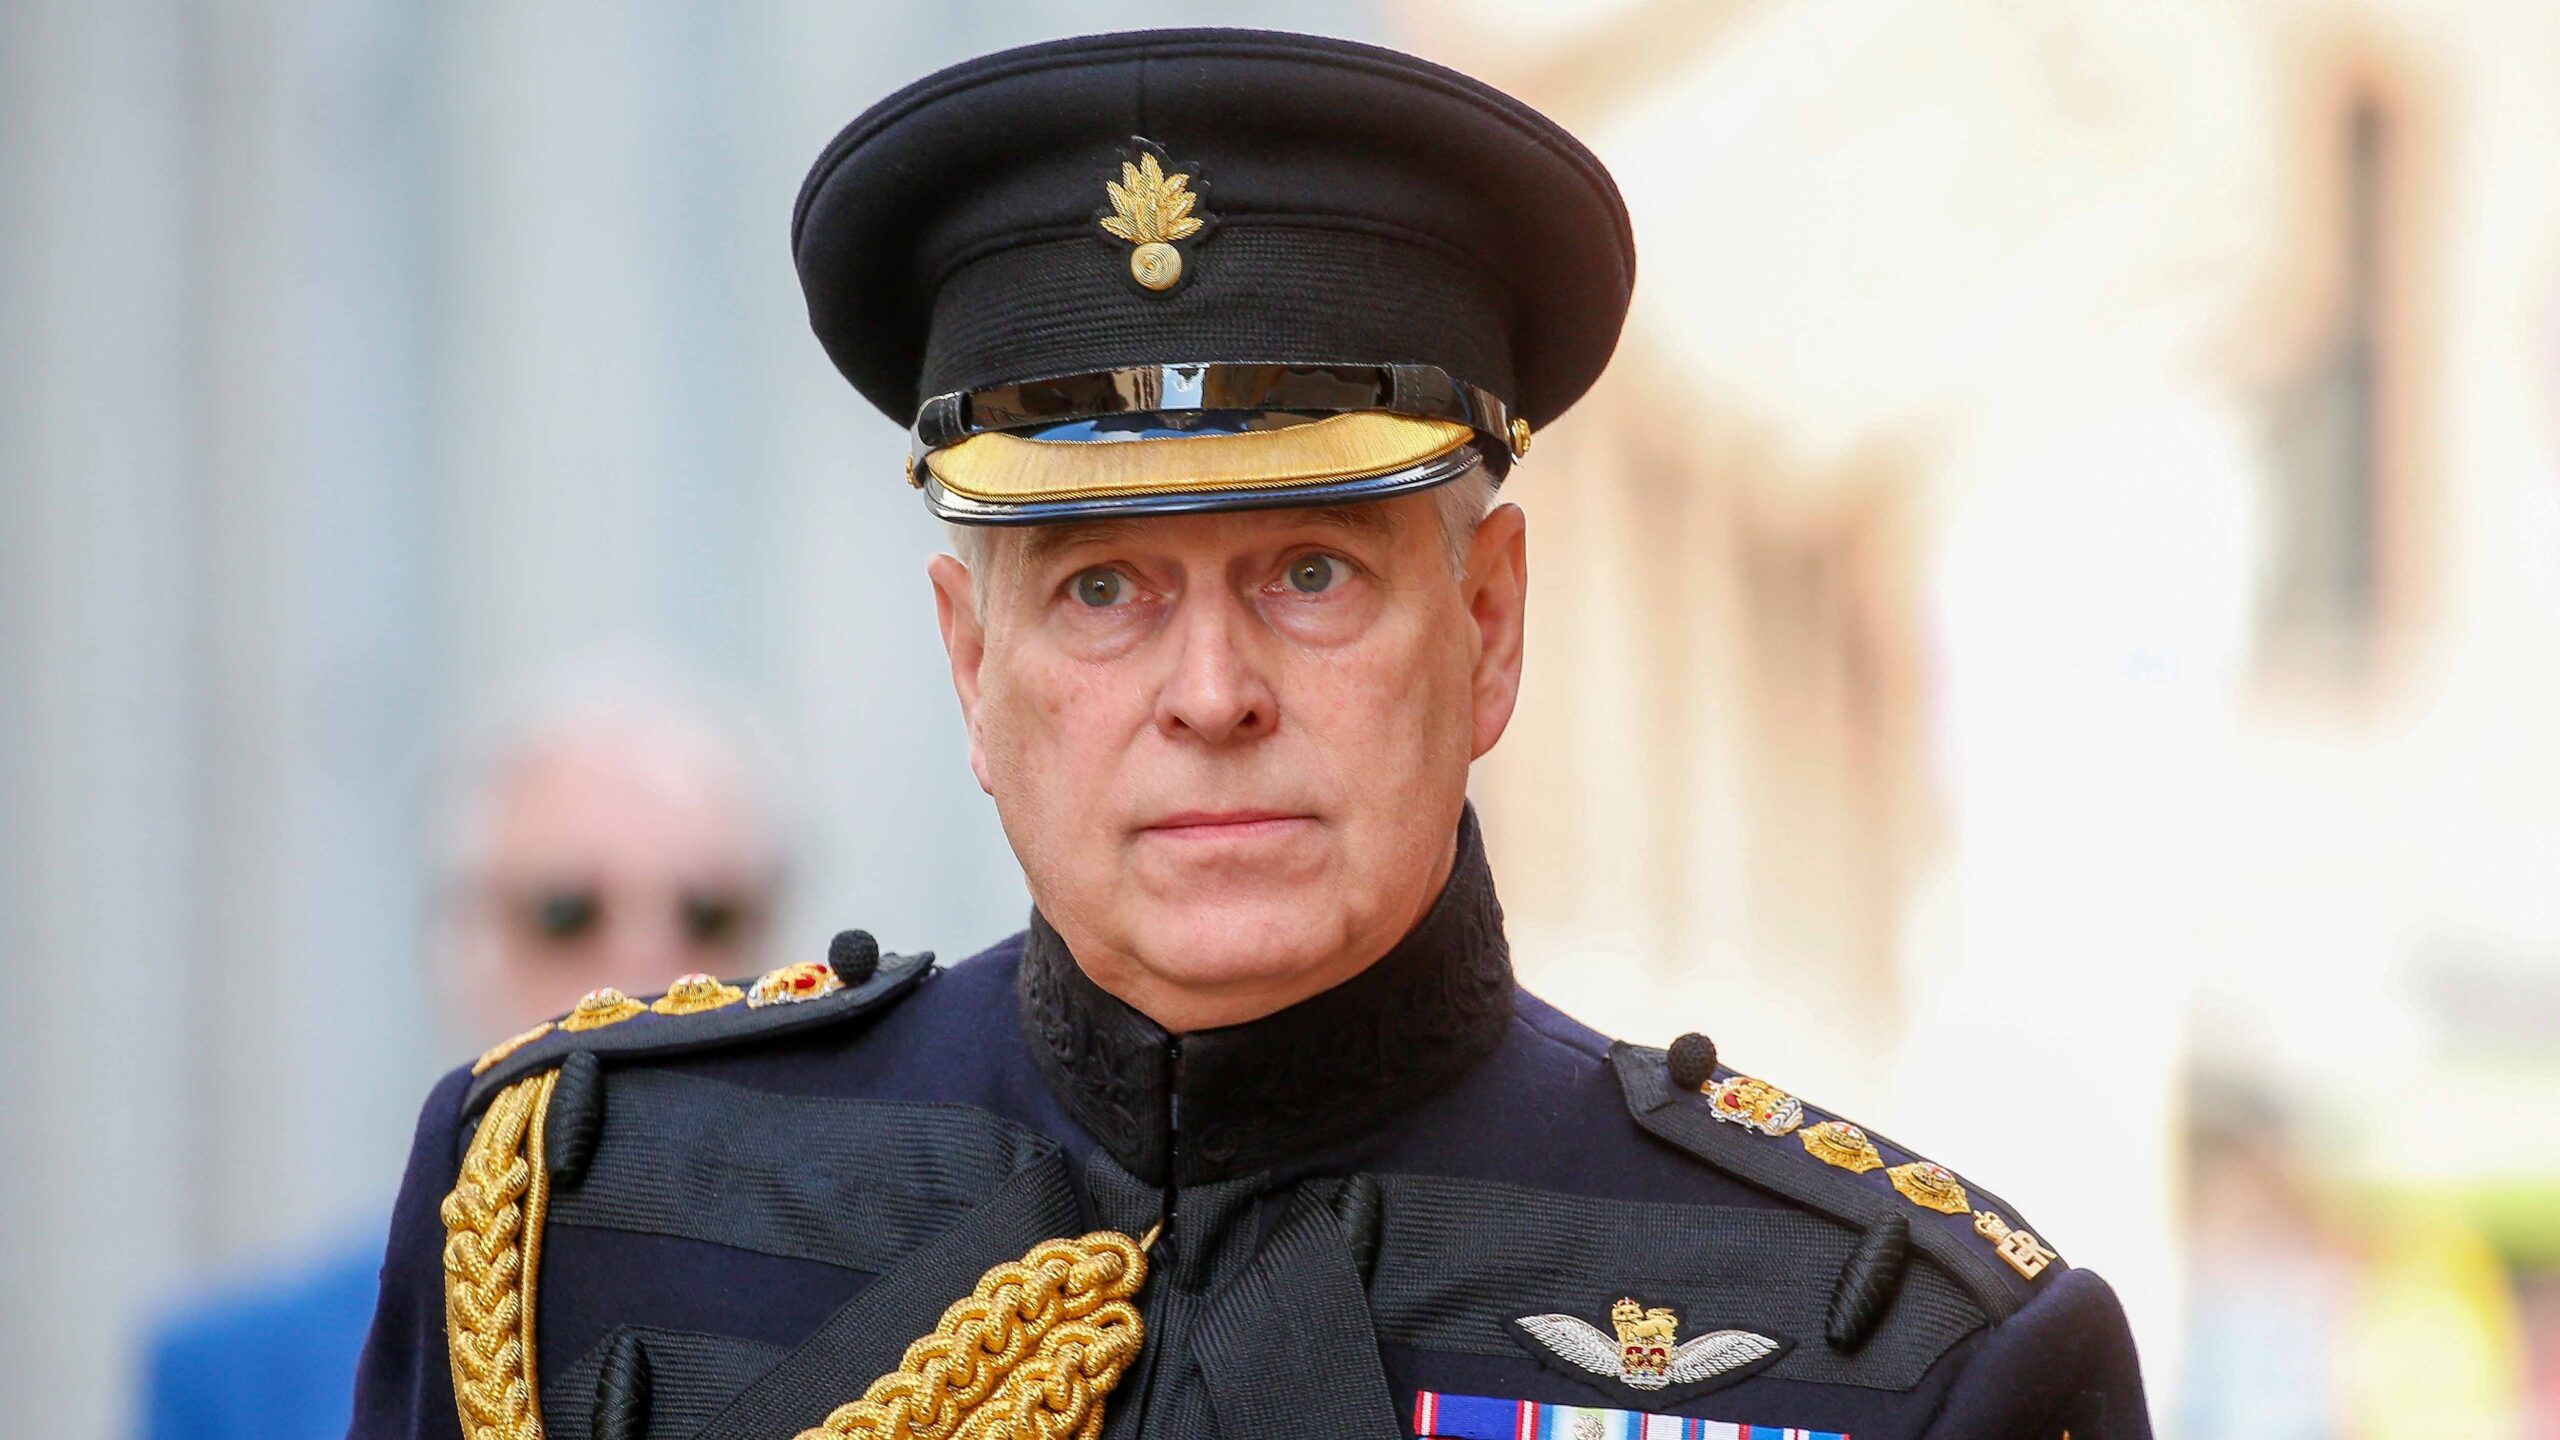 Por escándalo sexual, la reina Isabel despoja de títulos militares al príncipe Andrew